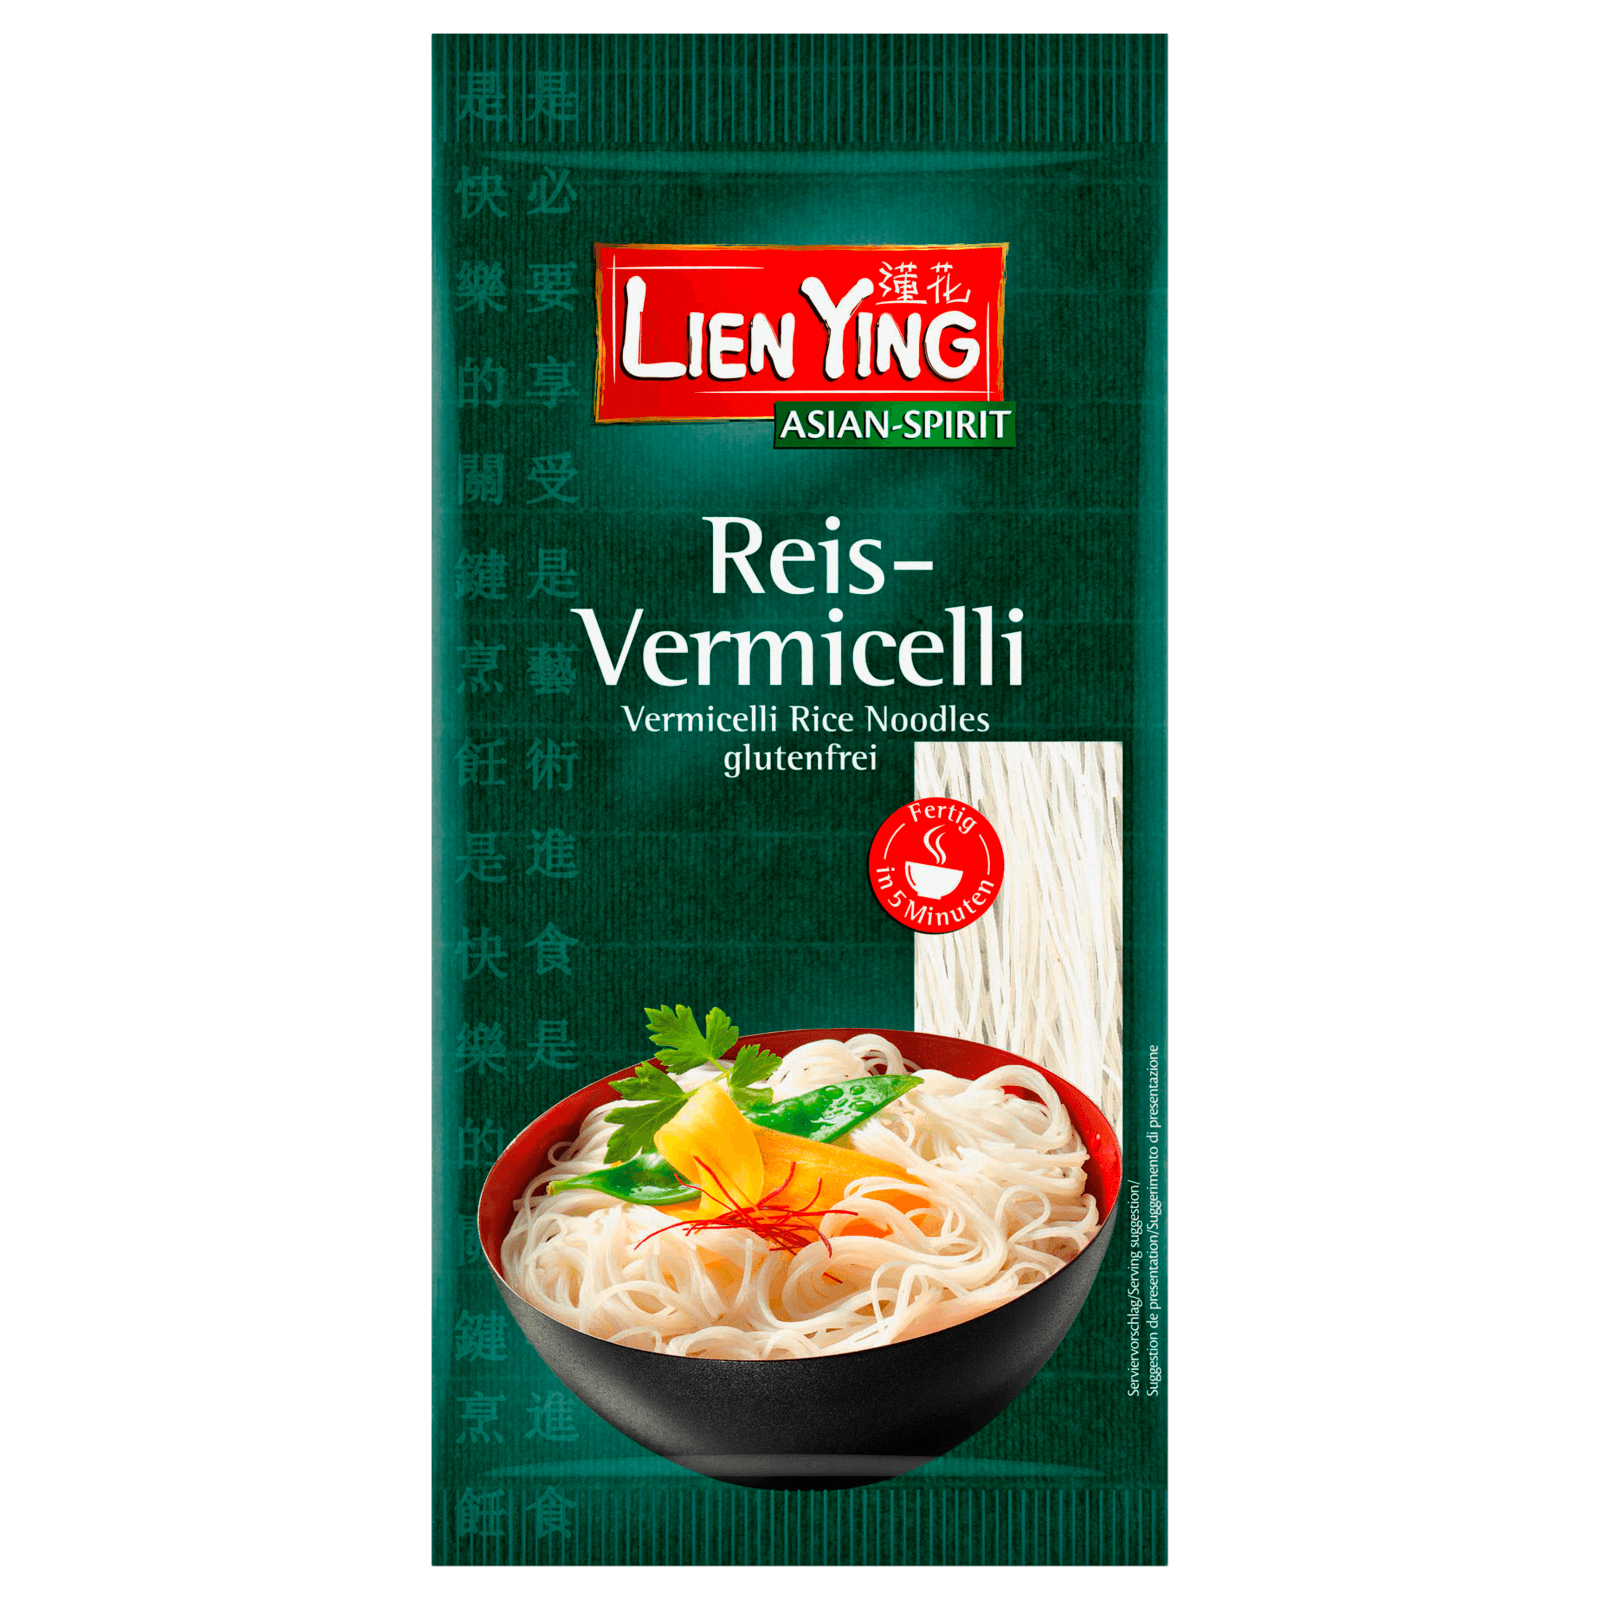 Lien Ying Ries-Vermicelli Glasnudeln 100g  für 1.39 EUR